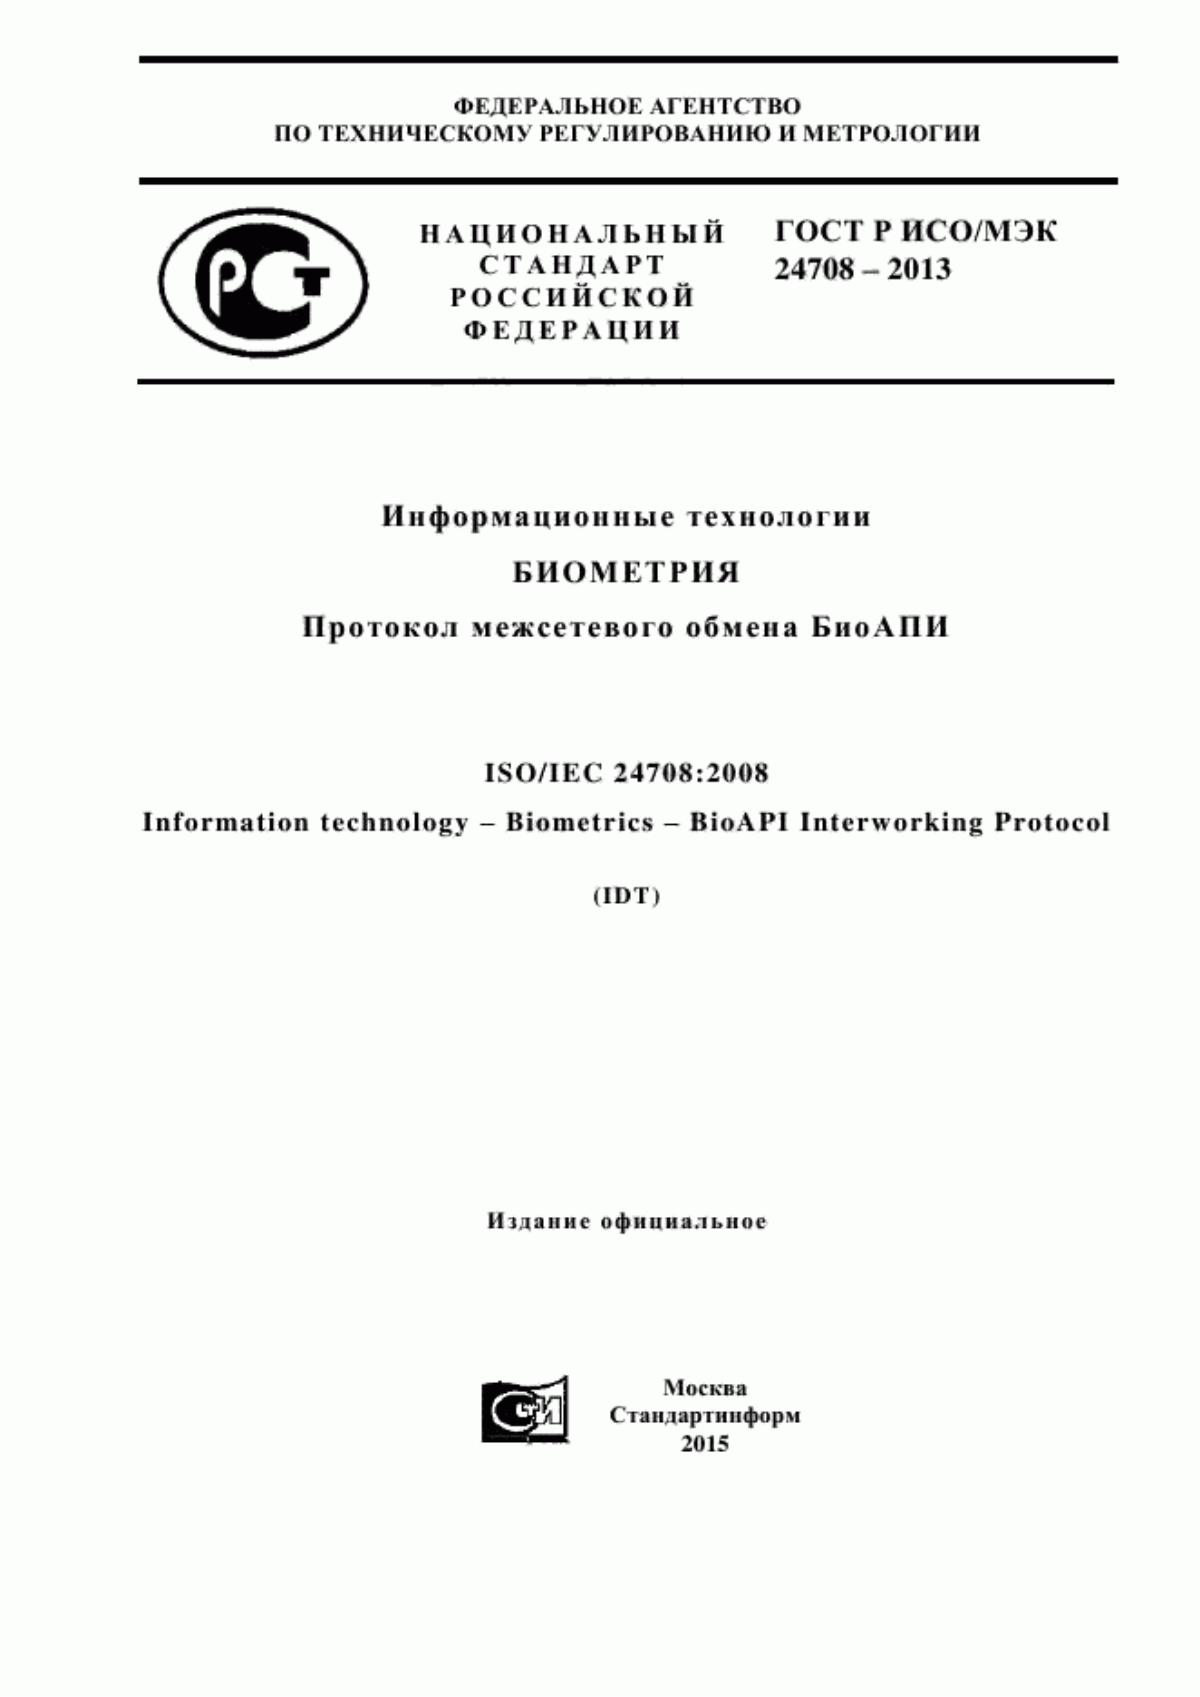 ГОСТ Р ИСО/МЭК 24708-2013 Информационные технологии. Биометрия. Протокол межсетевого обмена БиоАПИ